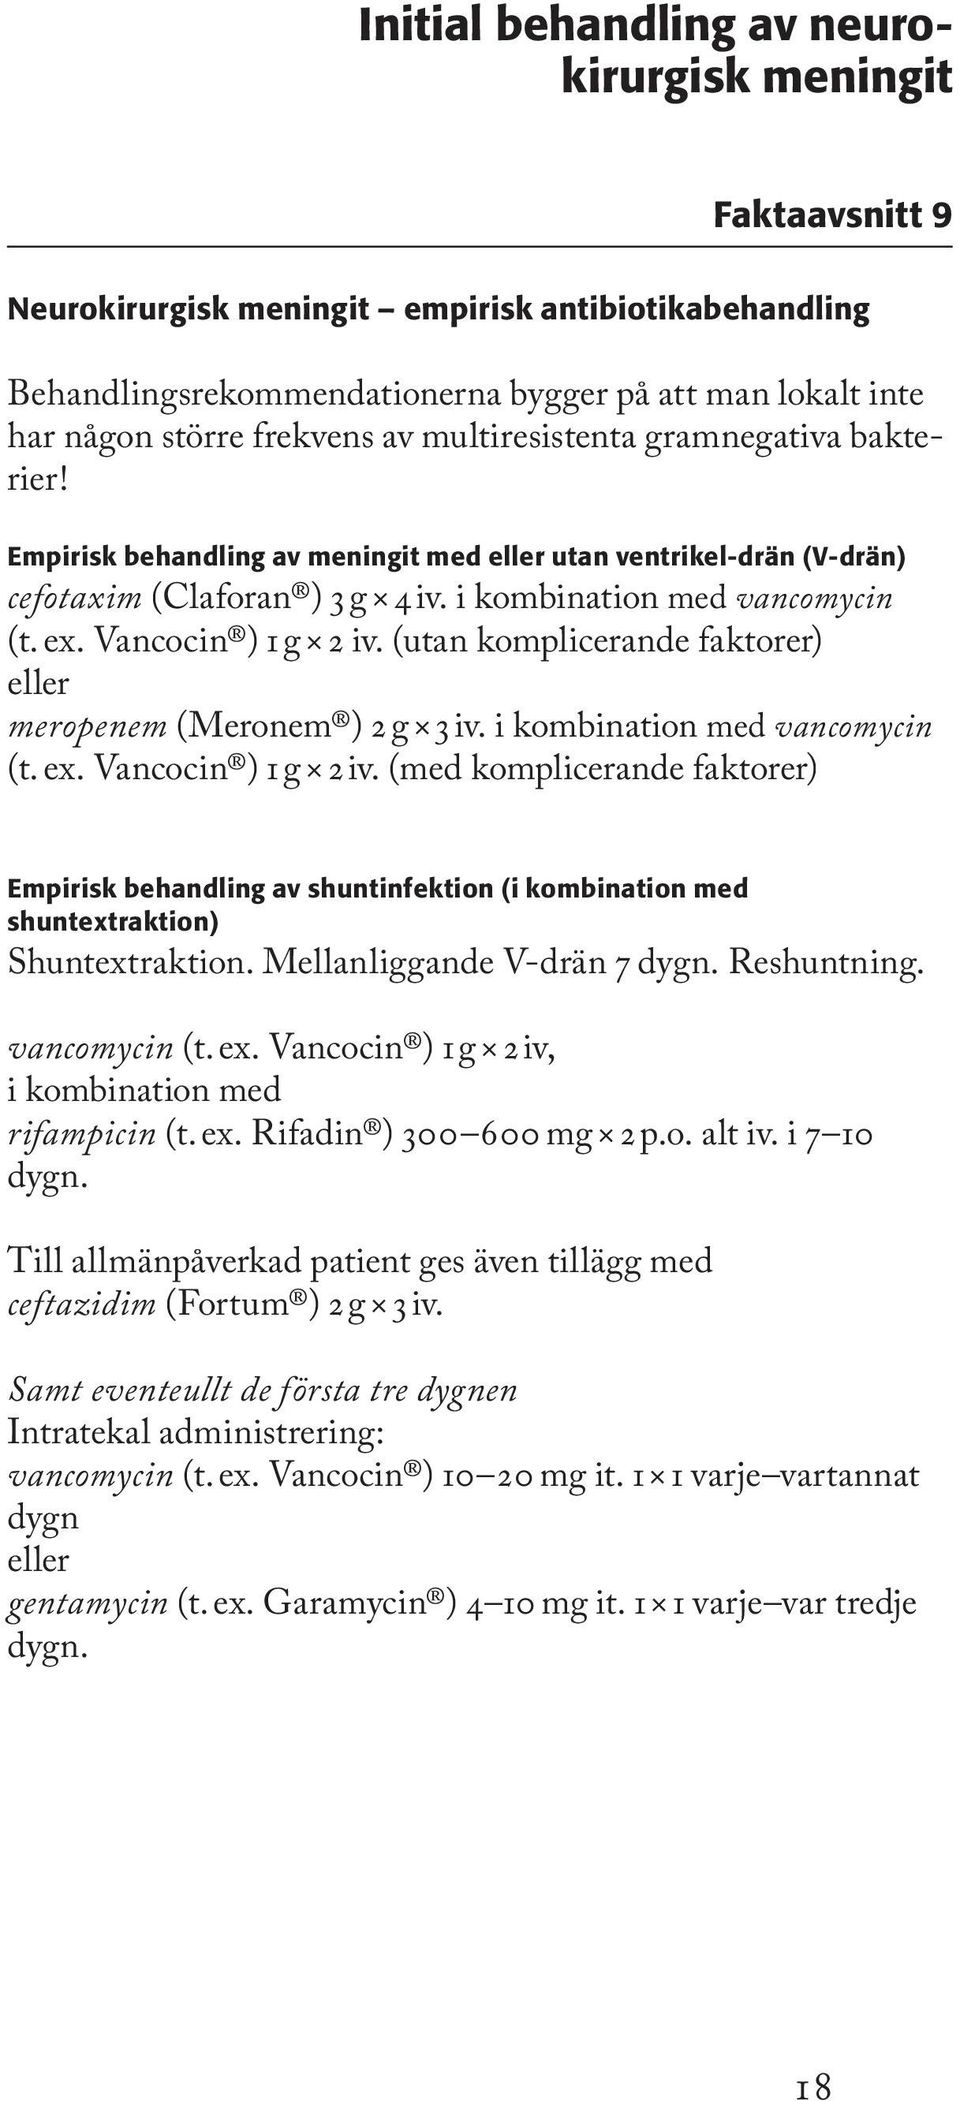 Vancocin ) 1 g 2 iv. (utan komplicerande faktorer) eller meropenem (Meronem ) 2 g 3 iv. i kombination med vancomycin (t. ex. Vancocin ) 1 g 2 iv.